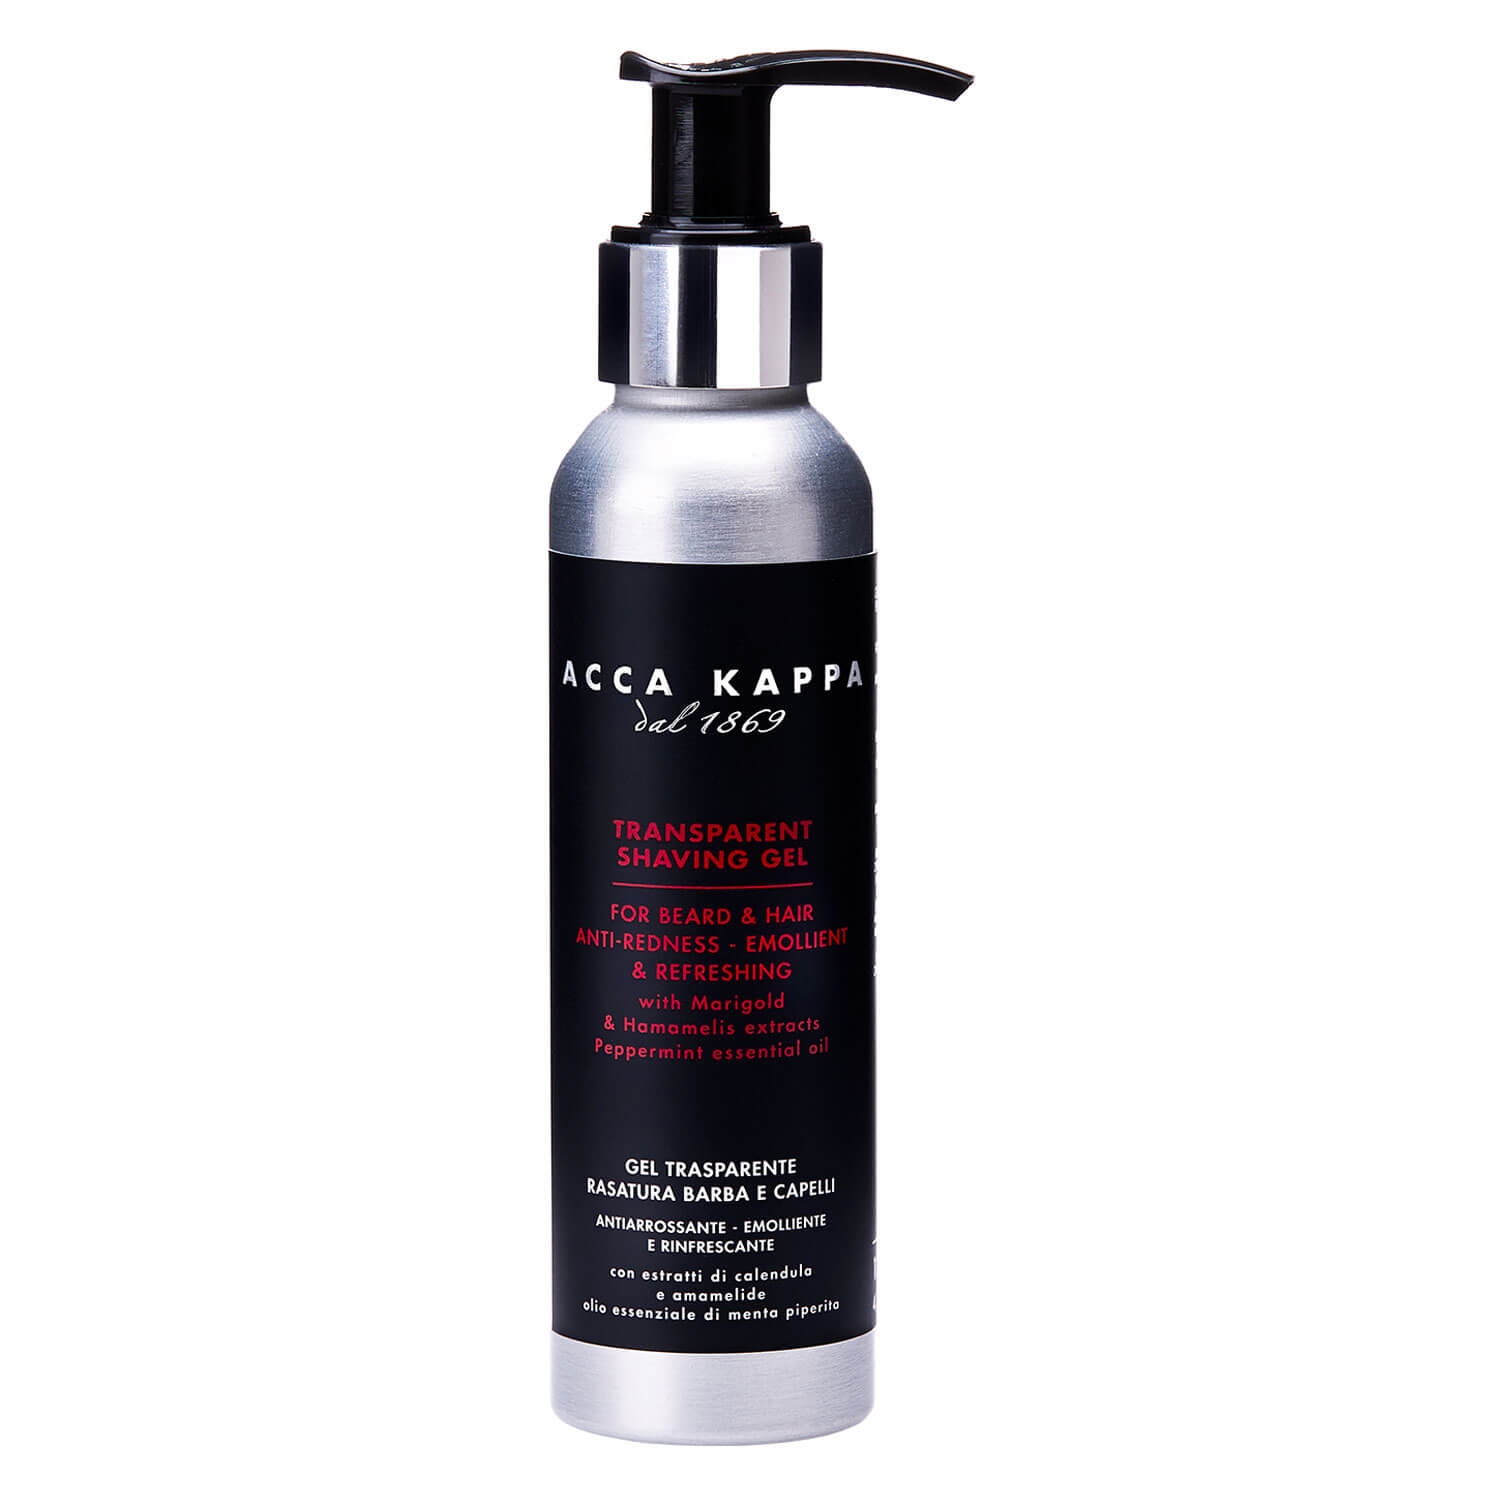 Produktbild von ACCA KAPPA - Transparent Shaving Gel